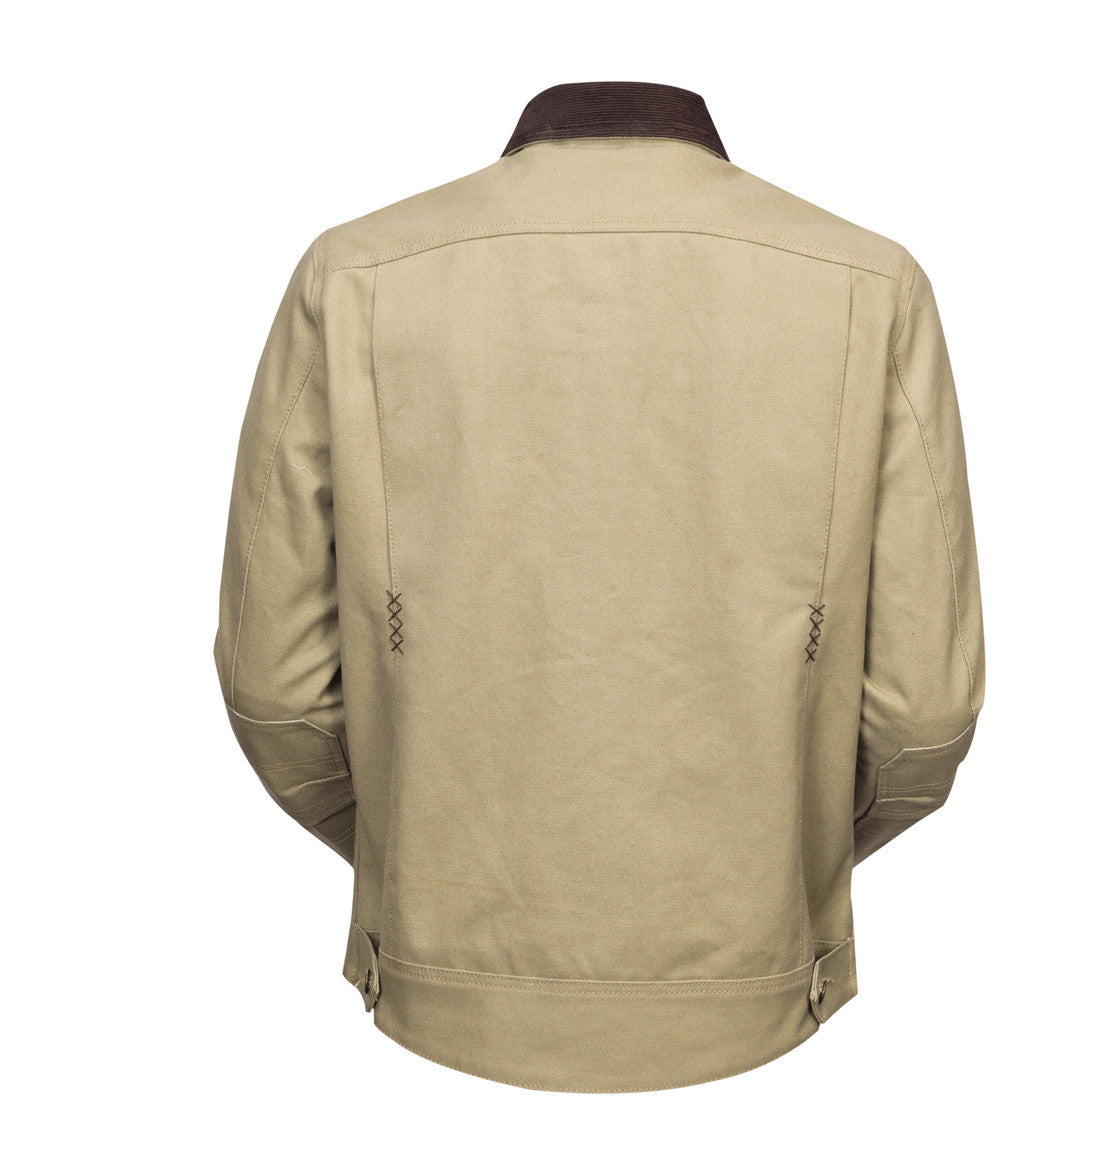 Roland Sands Design - Ramone - Khaki motorcycle jacket